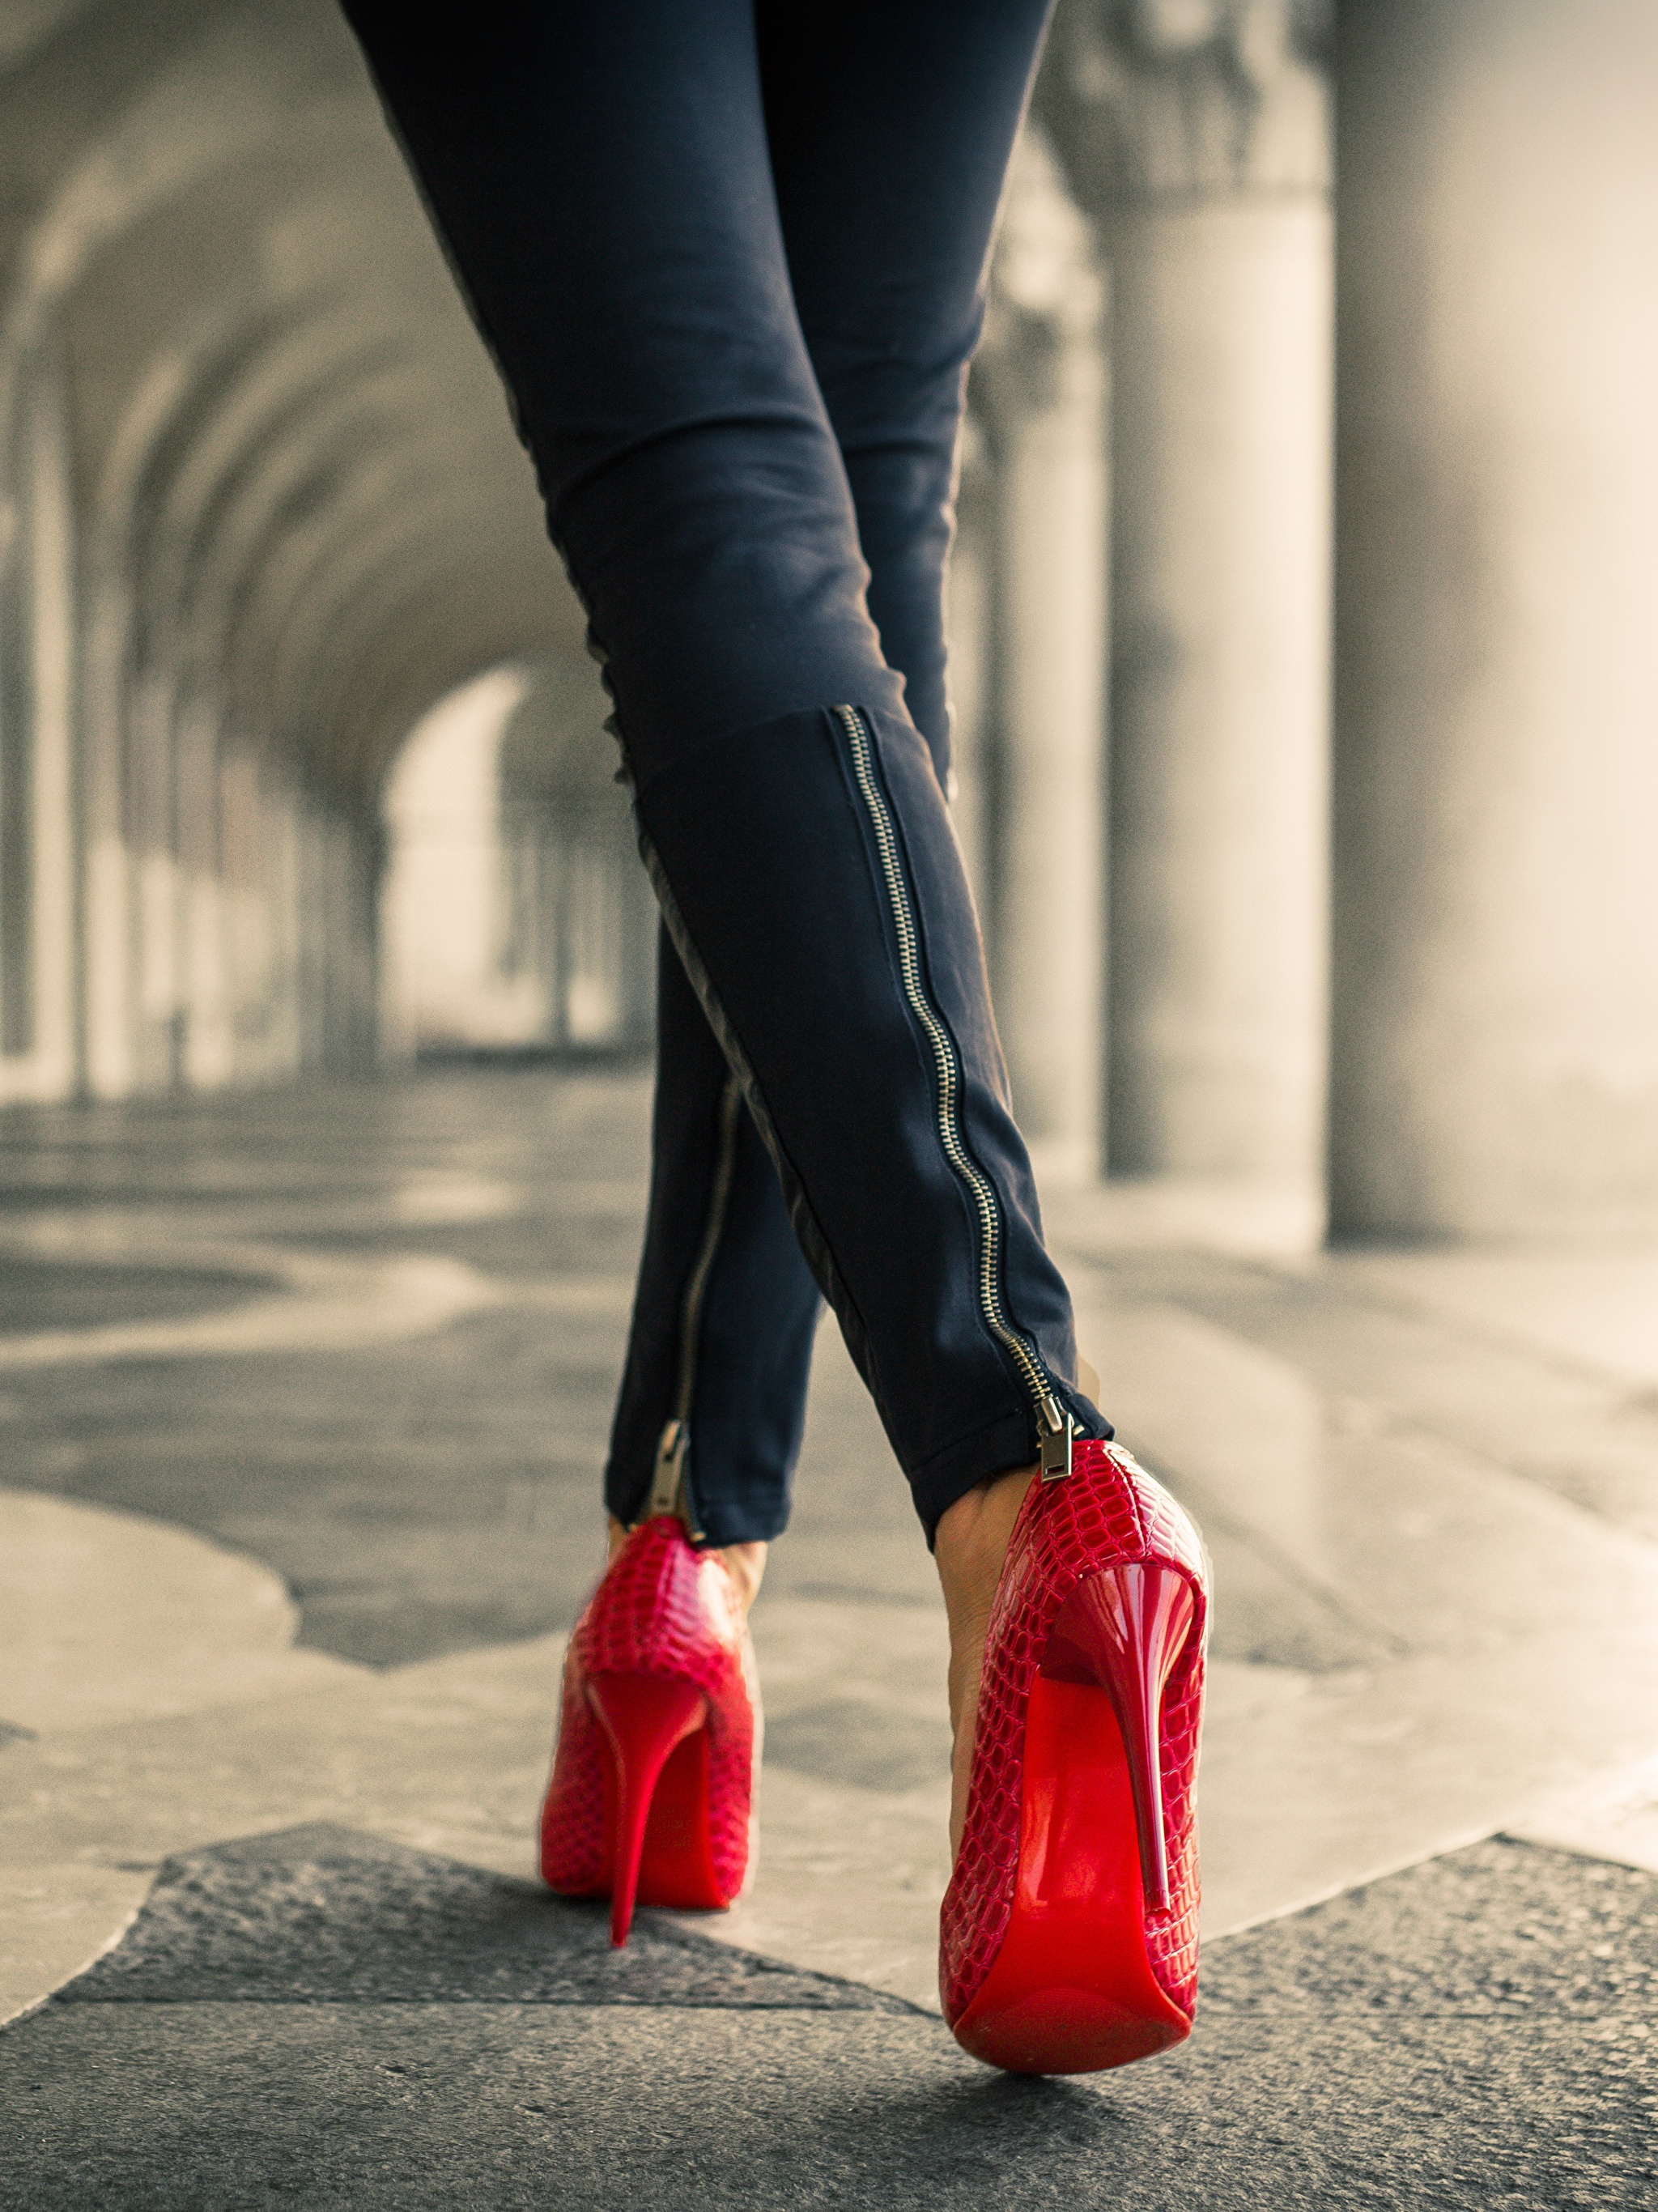 Фото ноги туфли. Женщина в красных туфлях. Девушка в крамныхтуылях. Девушка в красных туфлях на каблуке. Ноги в туфлях.